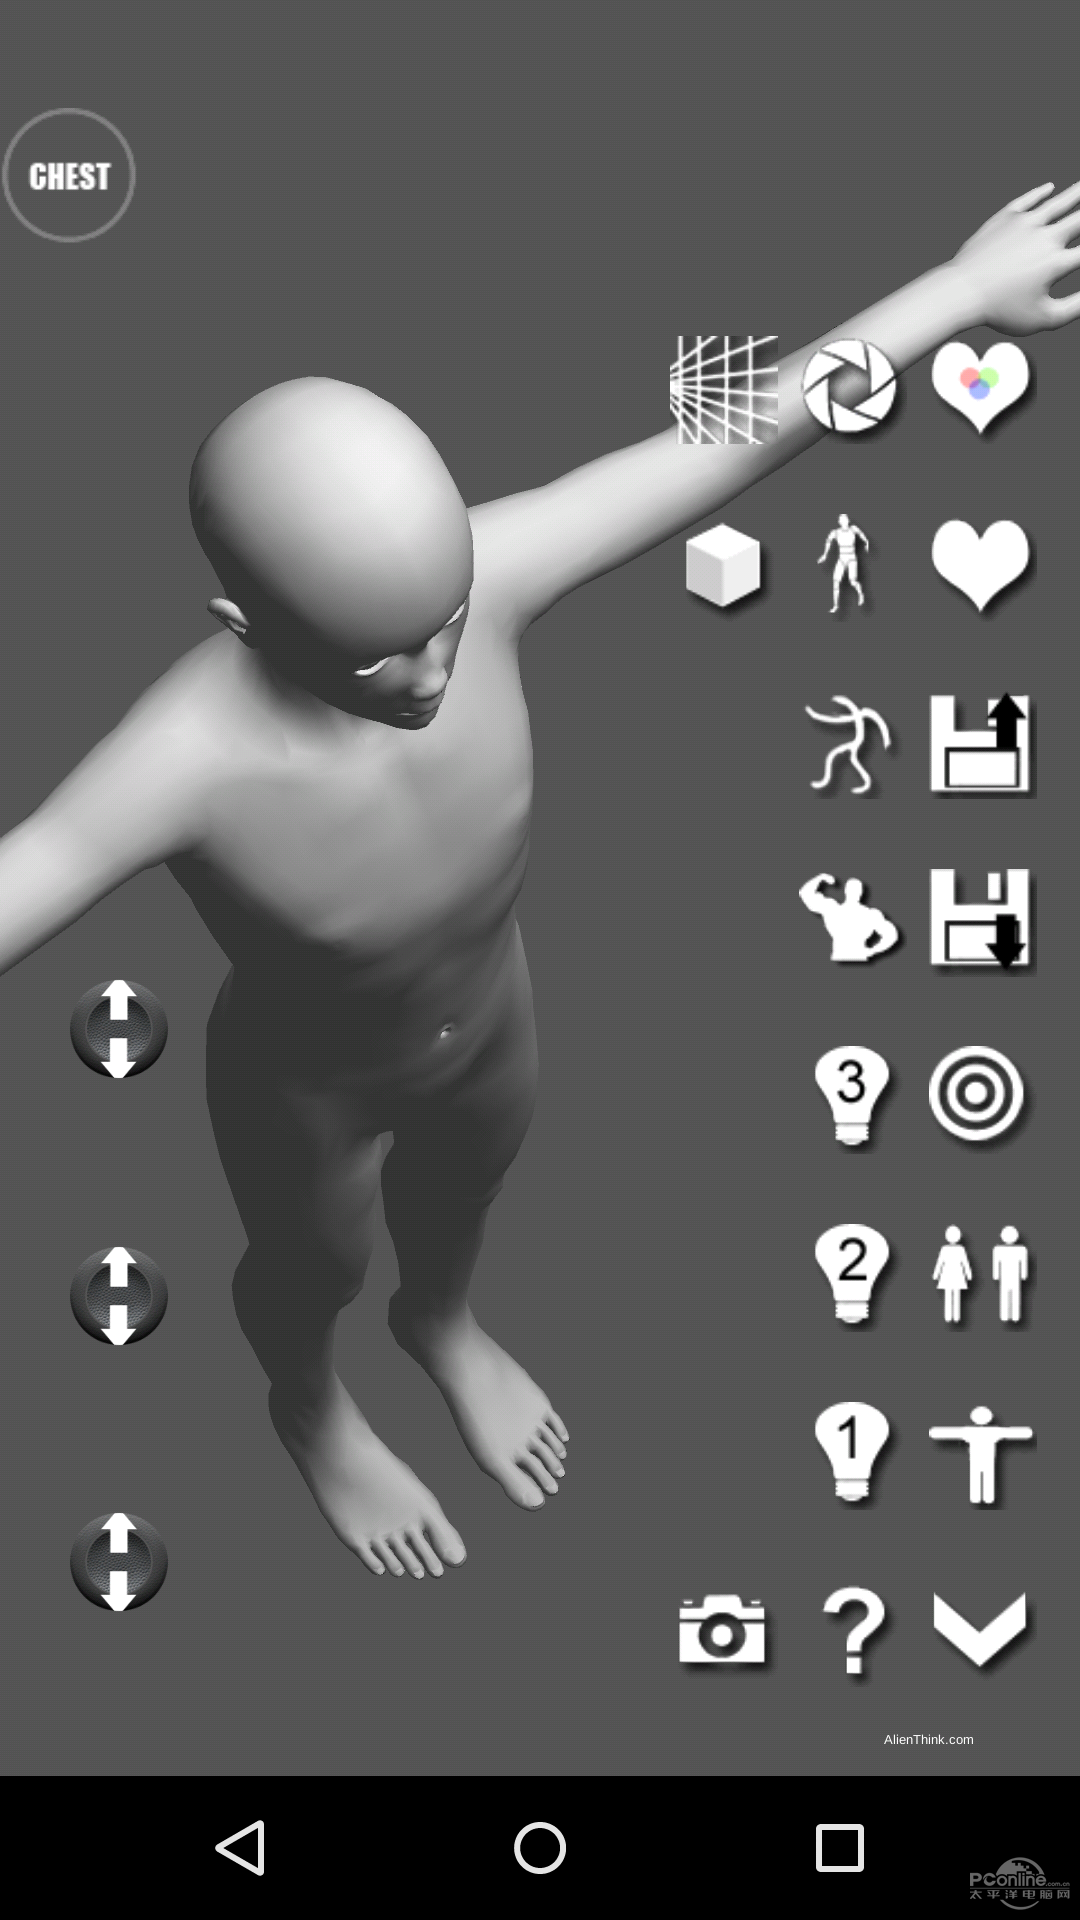 画师的大福利!3d裸体人体结构模型app